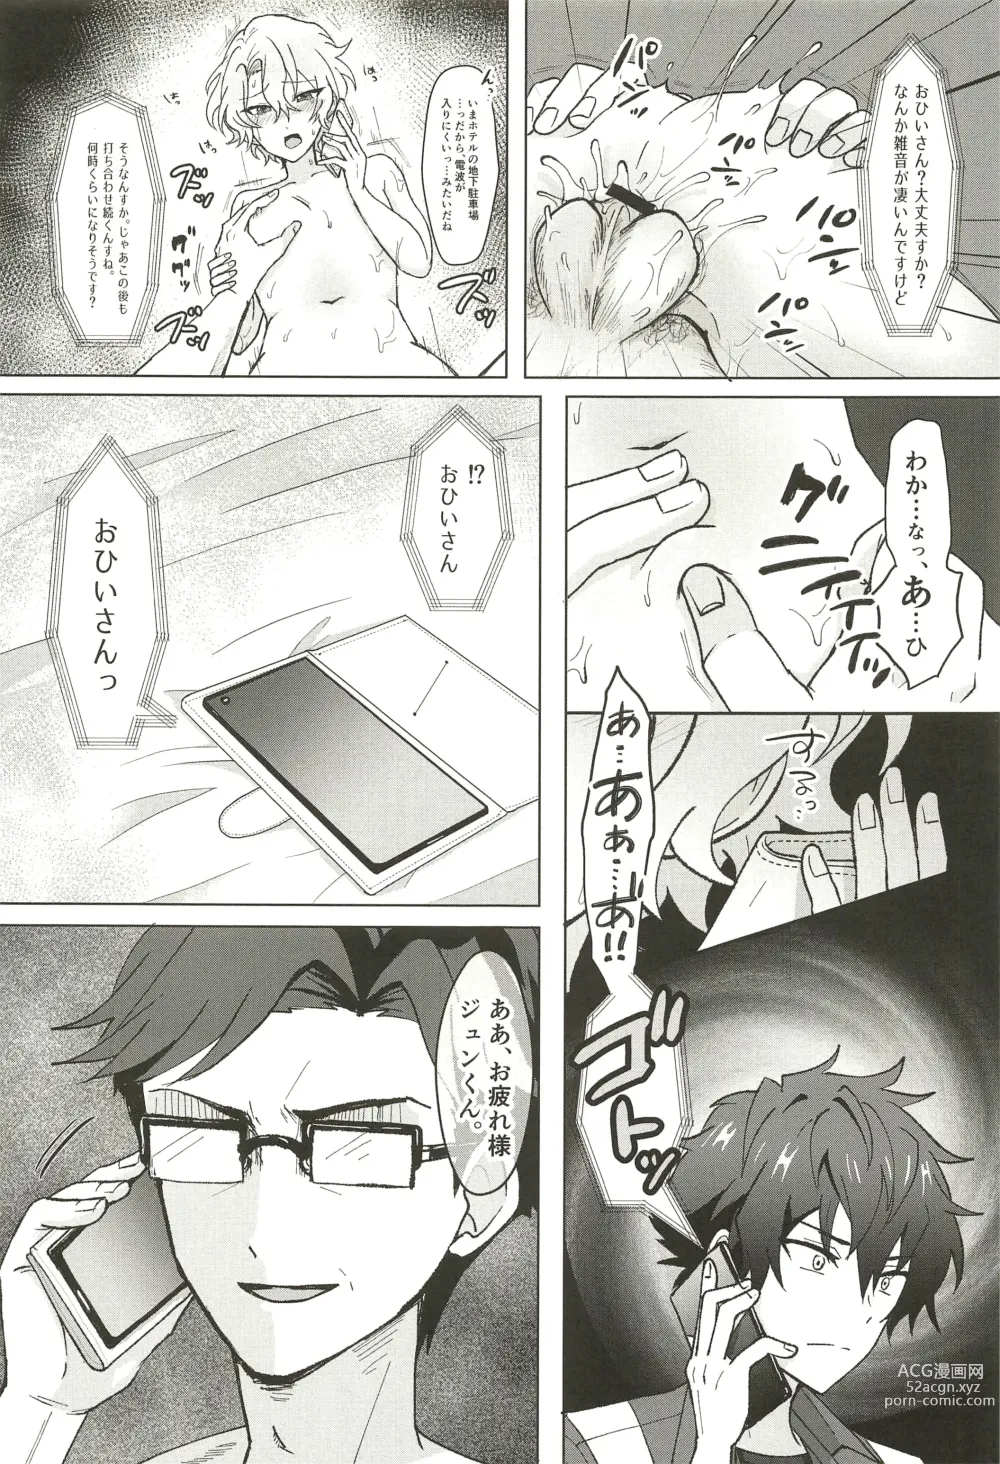 Page 60 of doujinshi Ochiru.